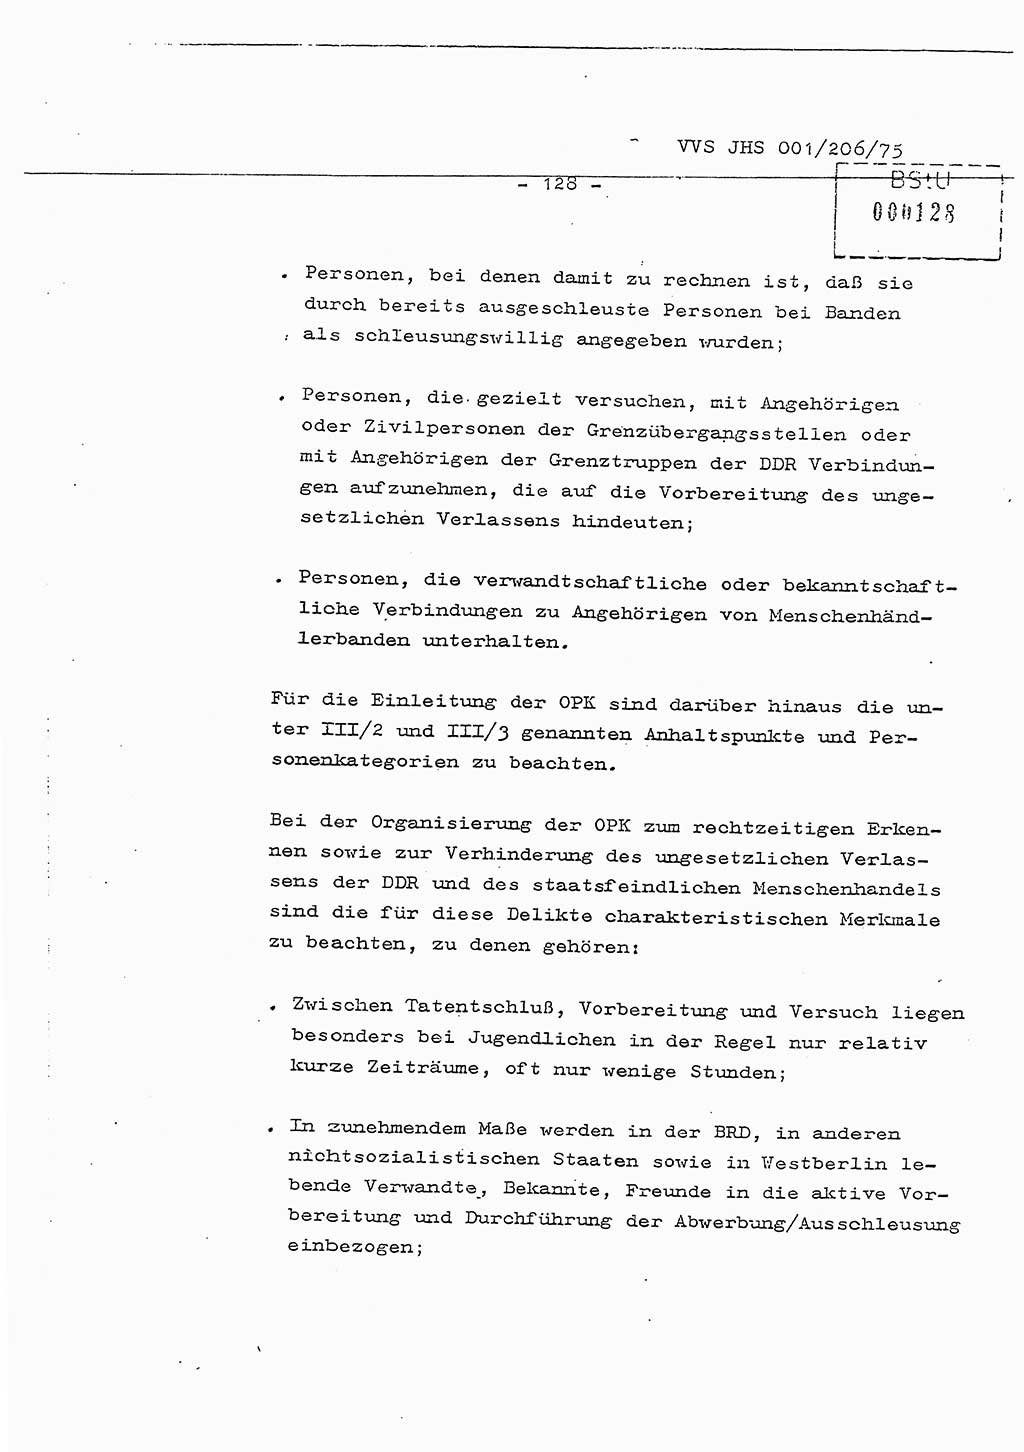 Dissertation Generalmajor Manfred Hummitzsch (Leiter der BV Leipzig), Generalmajor Heinz Fiedler (HA Ⅵ), Oberst Rolf Fister (HA Ⅸ), Ministerium für Staatssicherheit (MfS) [Deutsche Demokratische Republik (DDR)], Juristische Hochschule (JHS), Vertrauliche Verschlußsache (VVS) 001-206/75, Potsdam 1975, Seite 128 (Diss. MfS DDR JHS VVS 001-206/75 1975, S. 128)